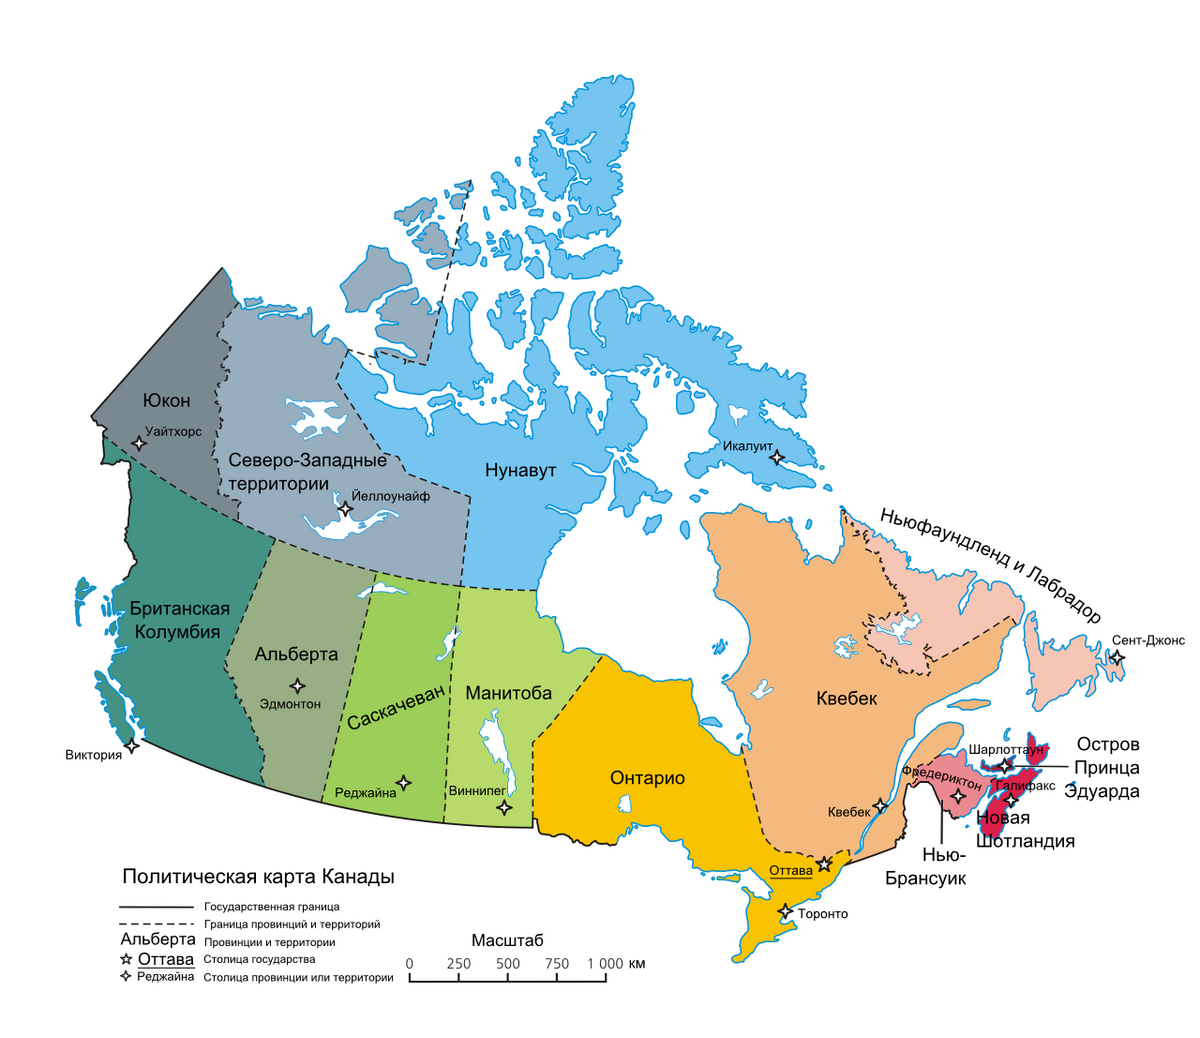 Административная карта Канады. Источник: Википедия